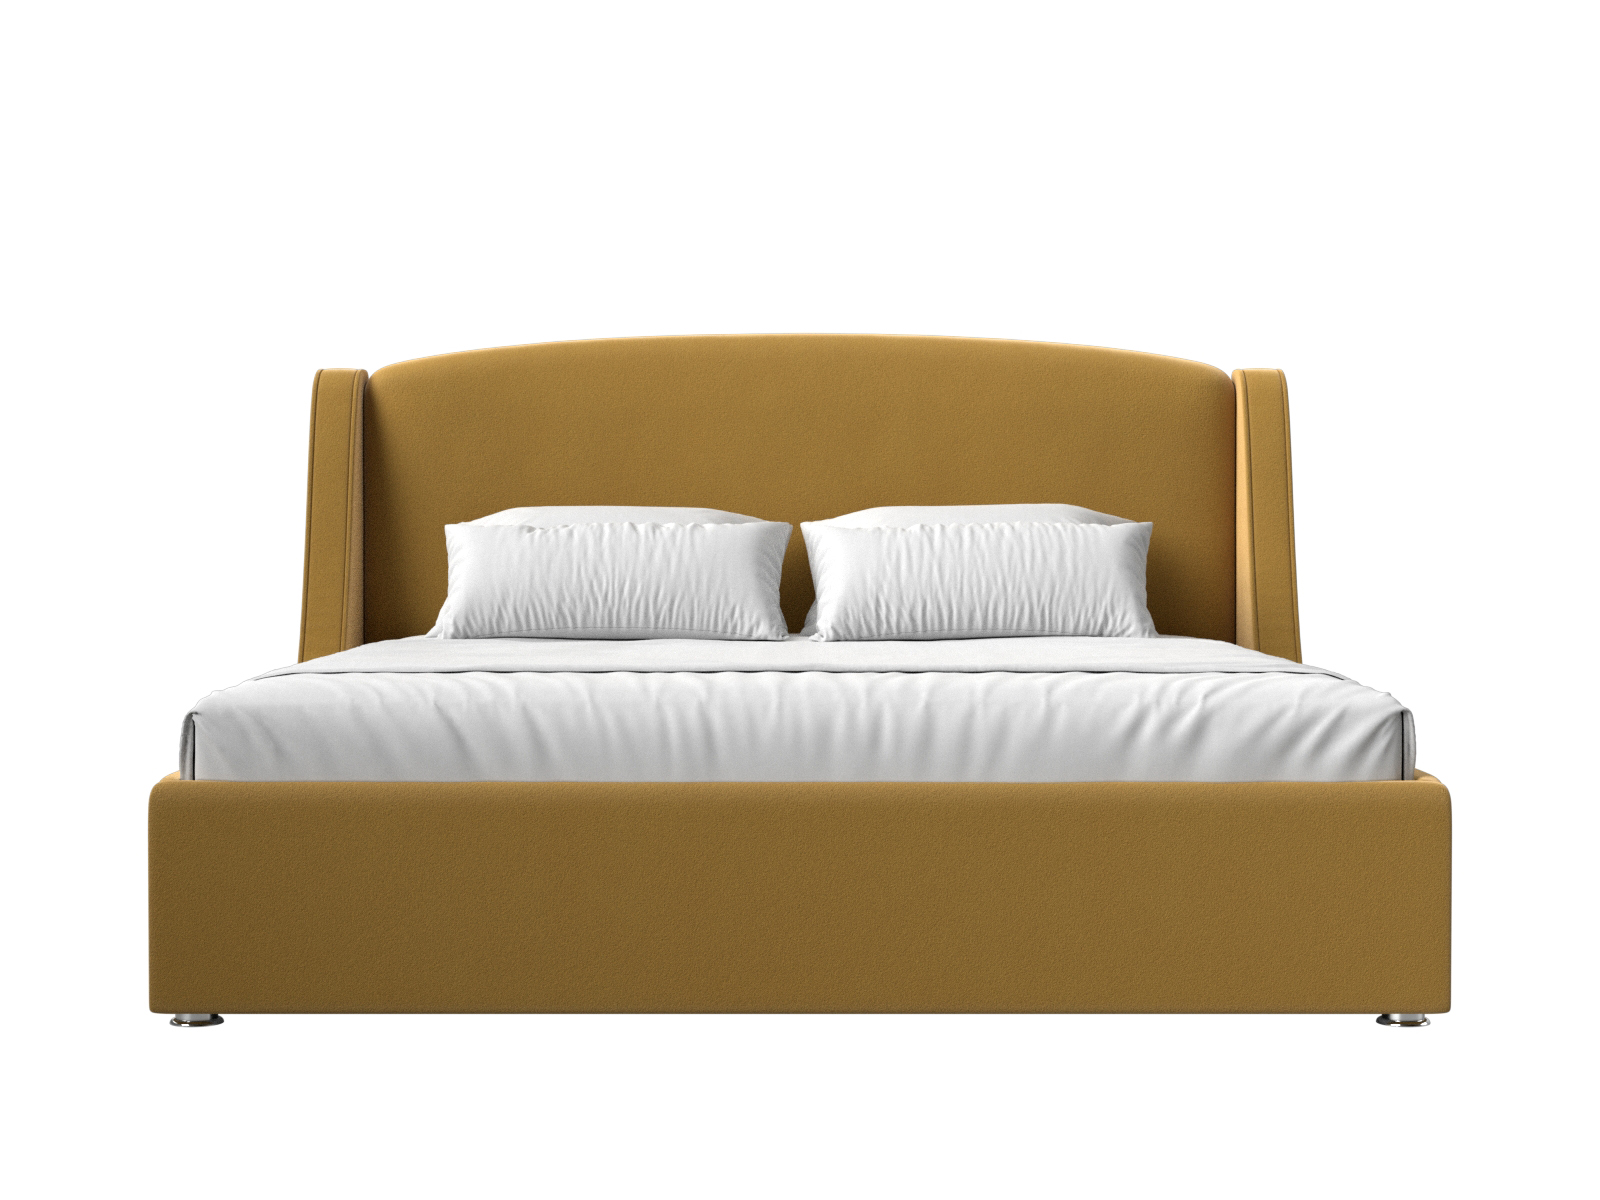 Интерьерная кровать Лотос 160 (Желтый)